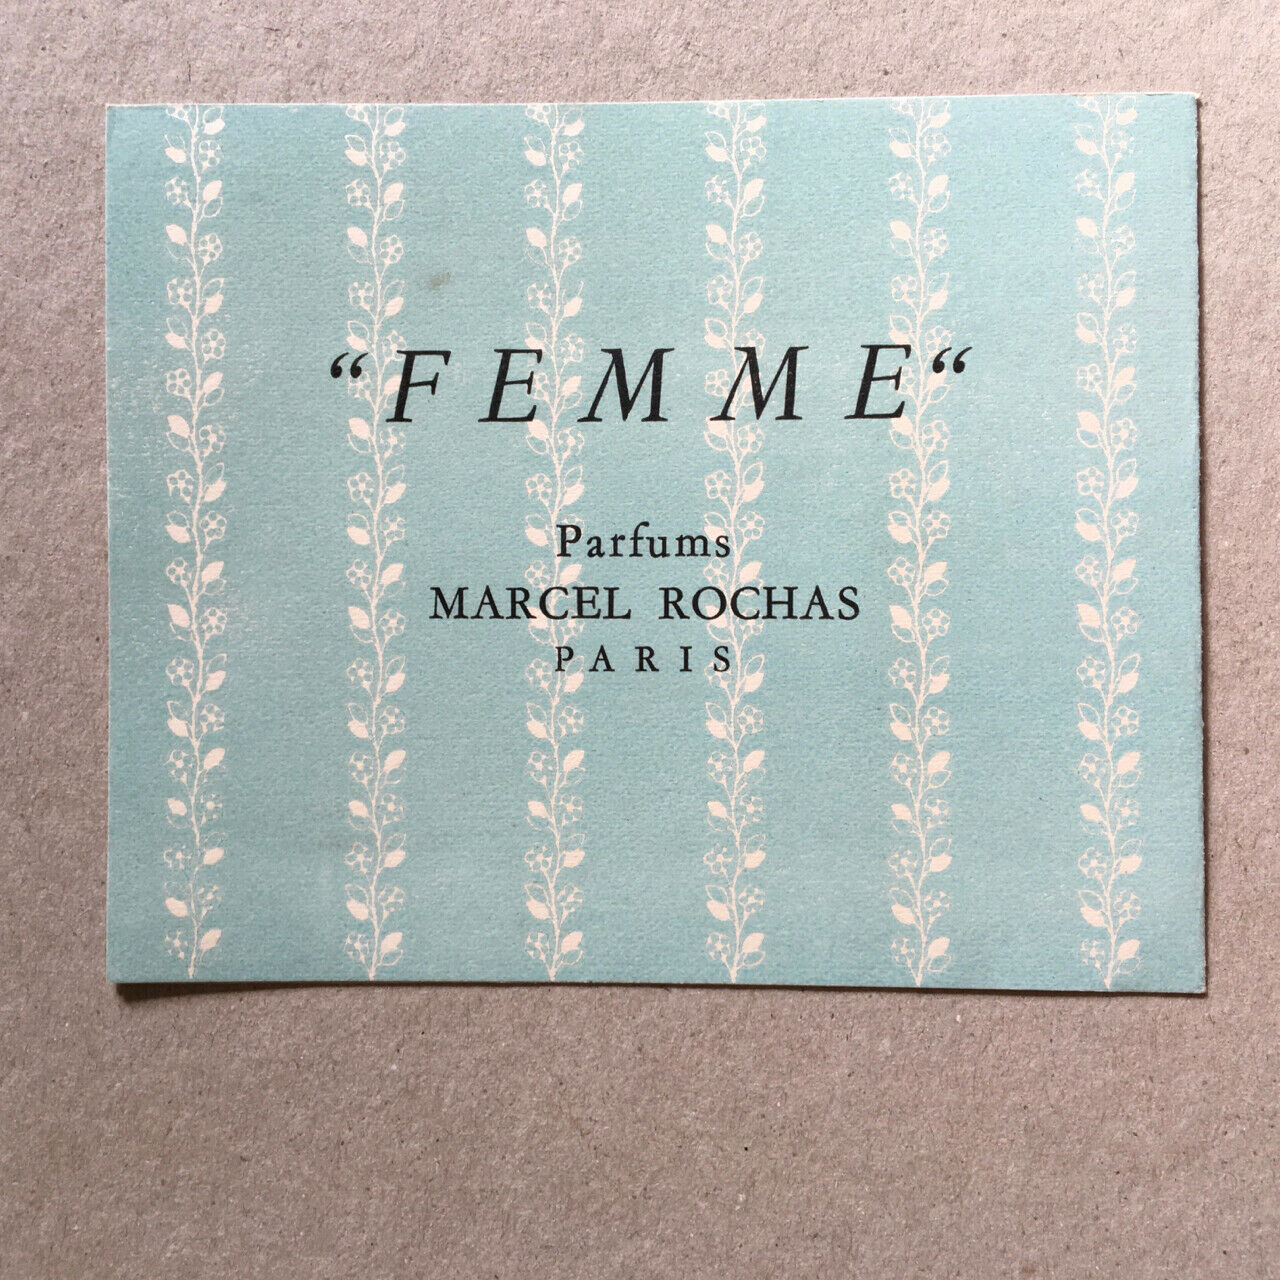 Marcel Rochas — Femme — Les parfums à travers la mode 1765-1945 — invitation.